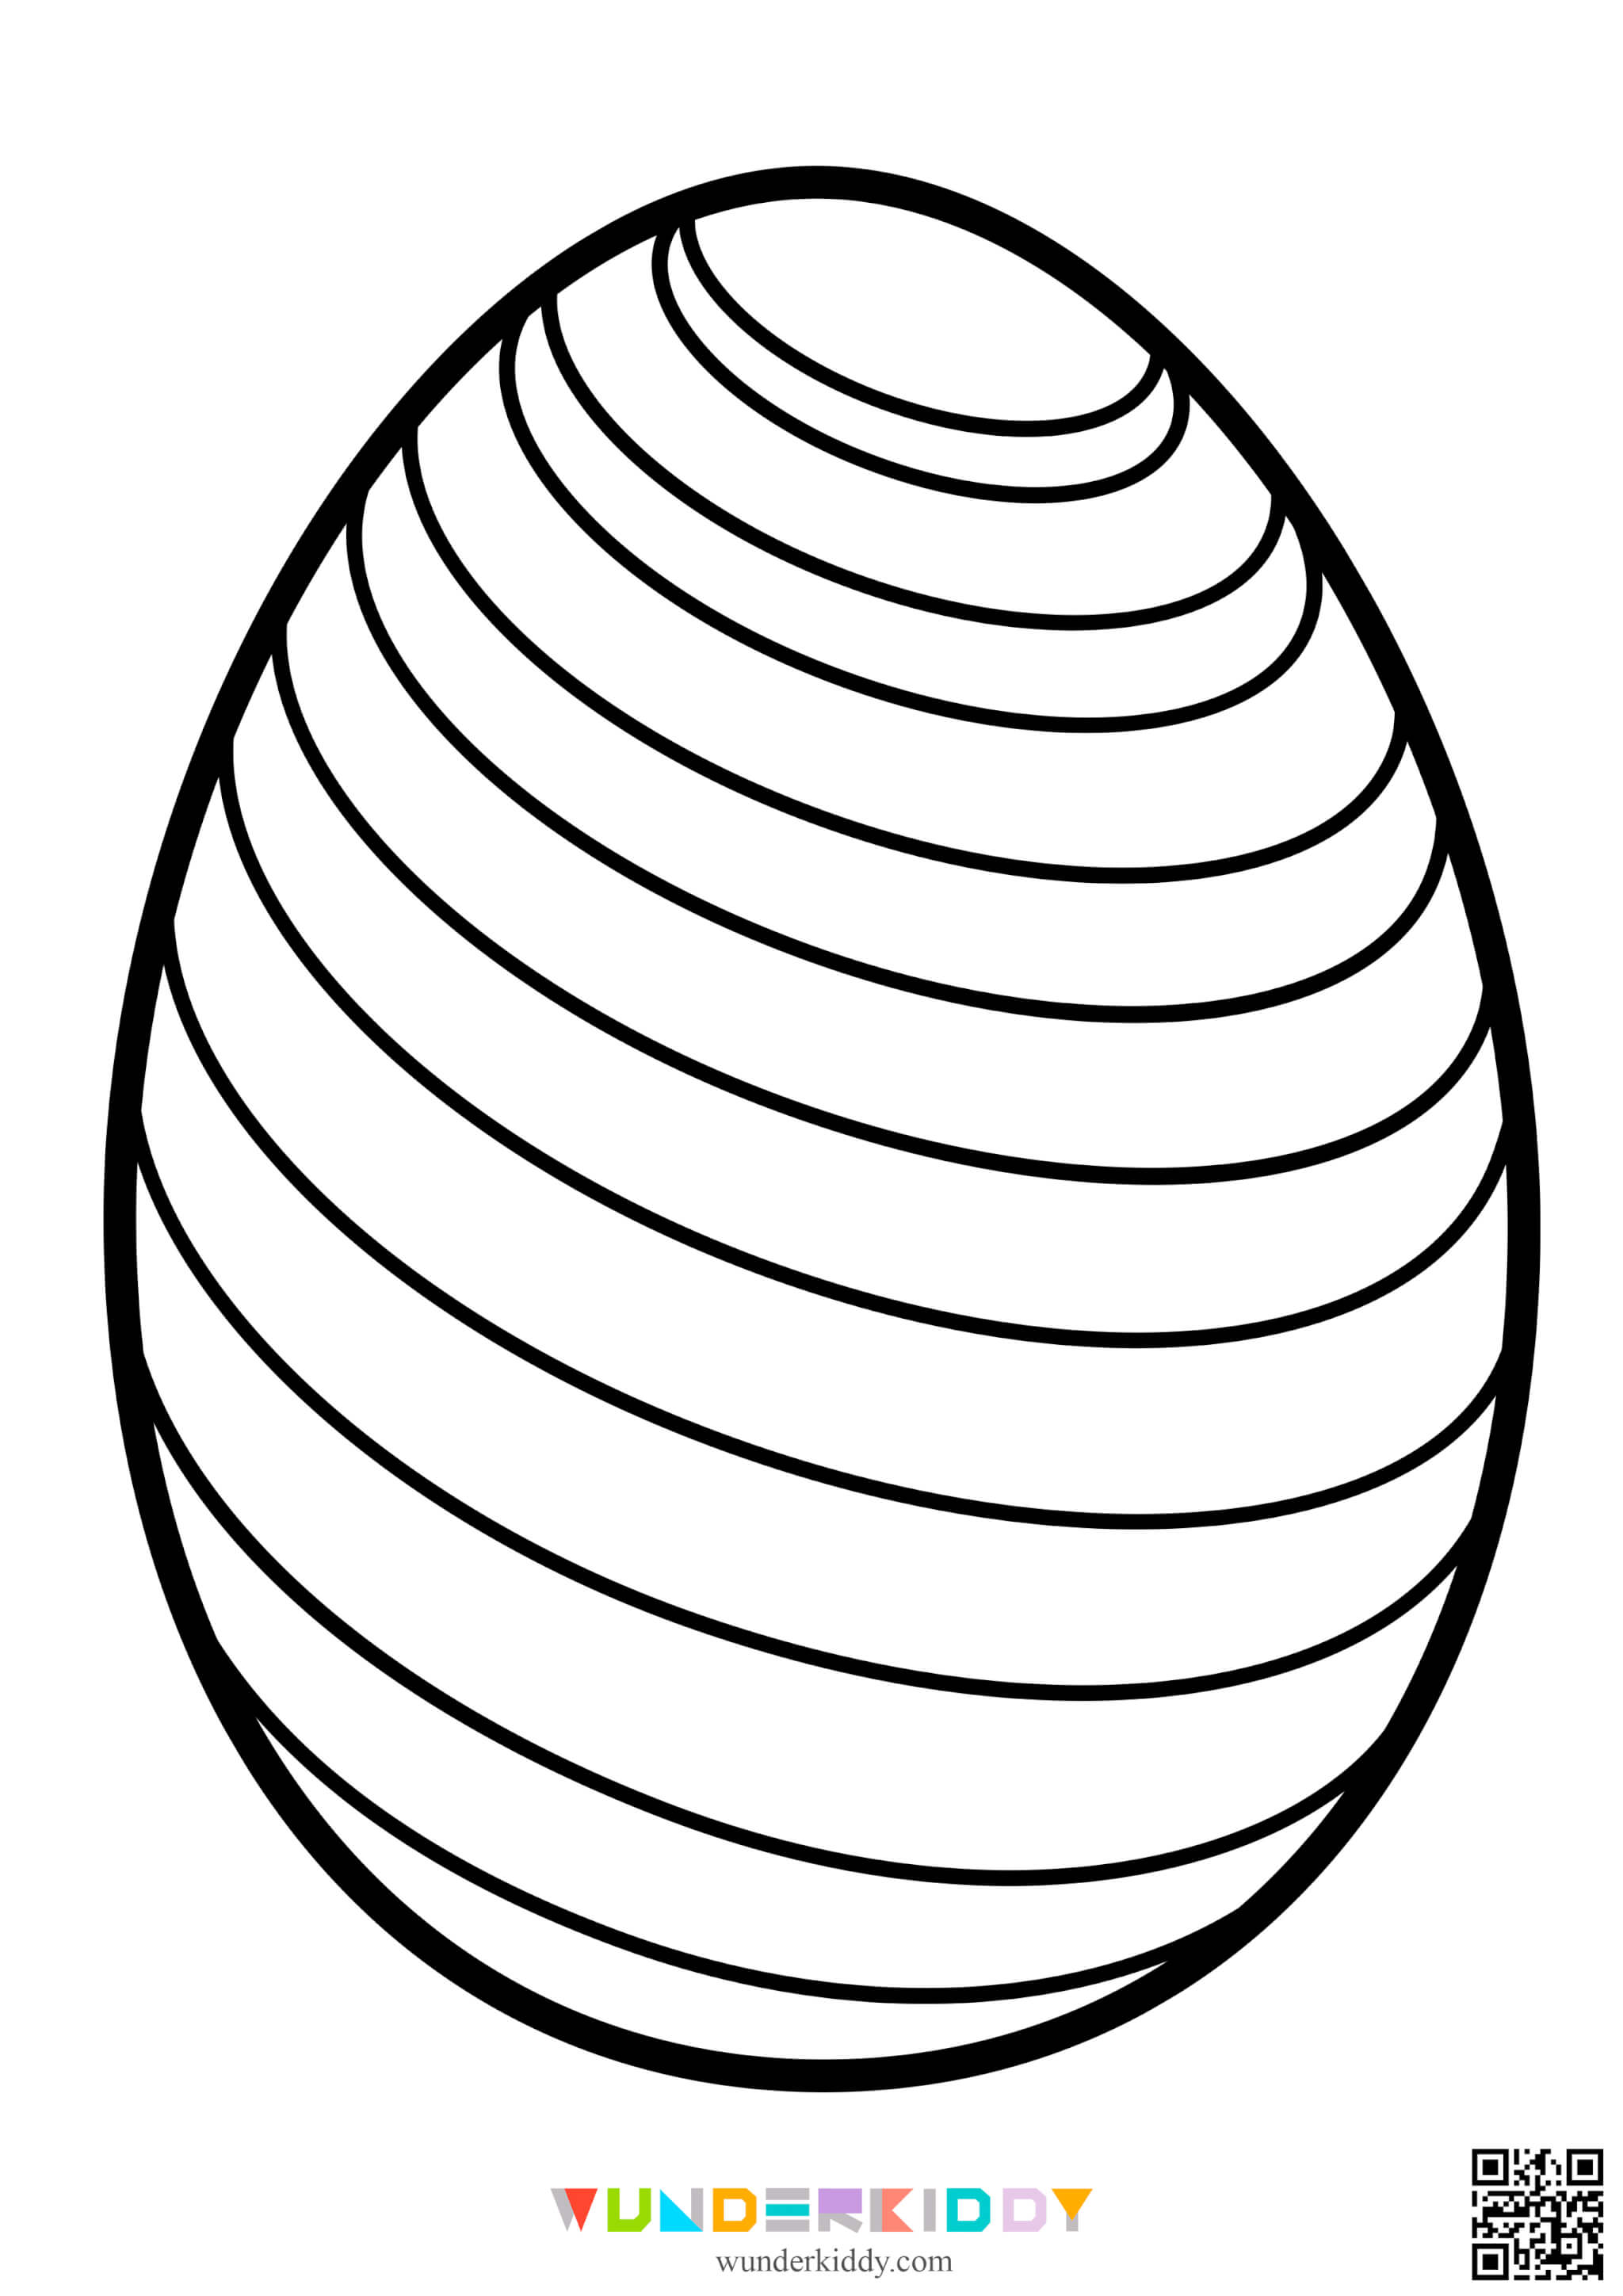 Easter Egg Template